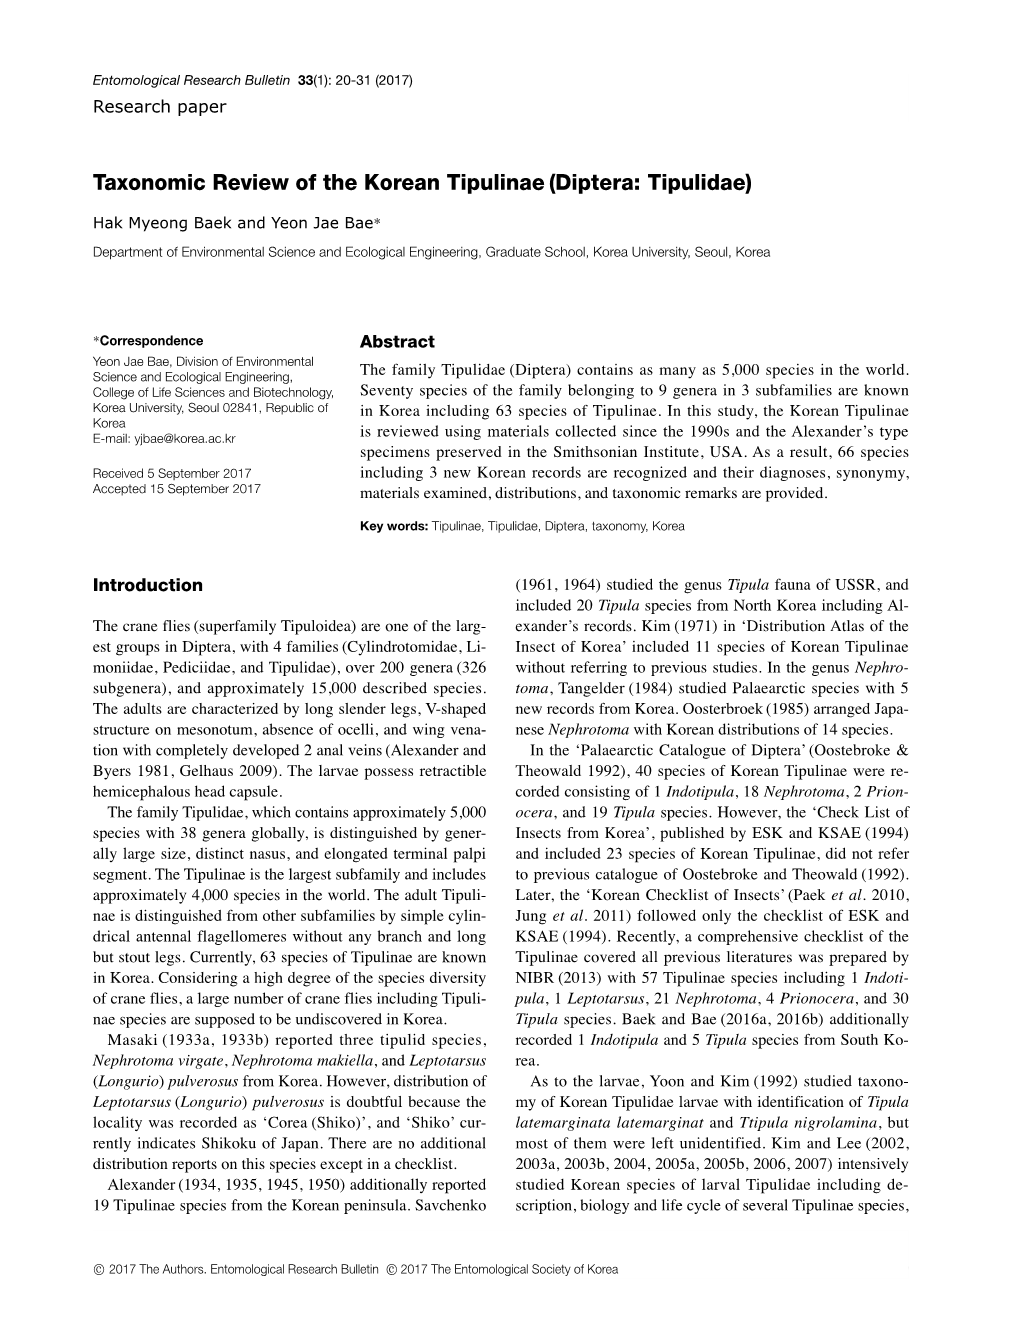 Taxonomic Review of the Korean Tipulinae (Diptera: Tipulidae)